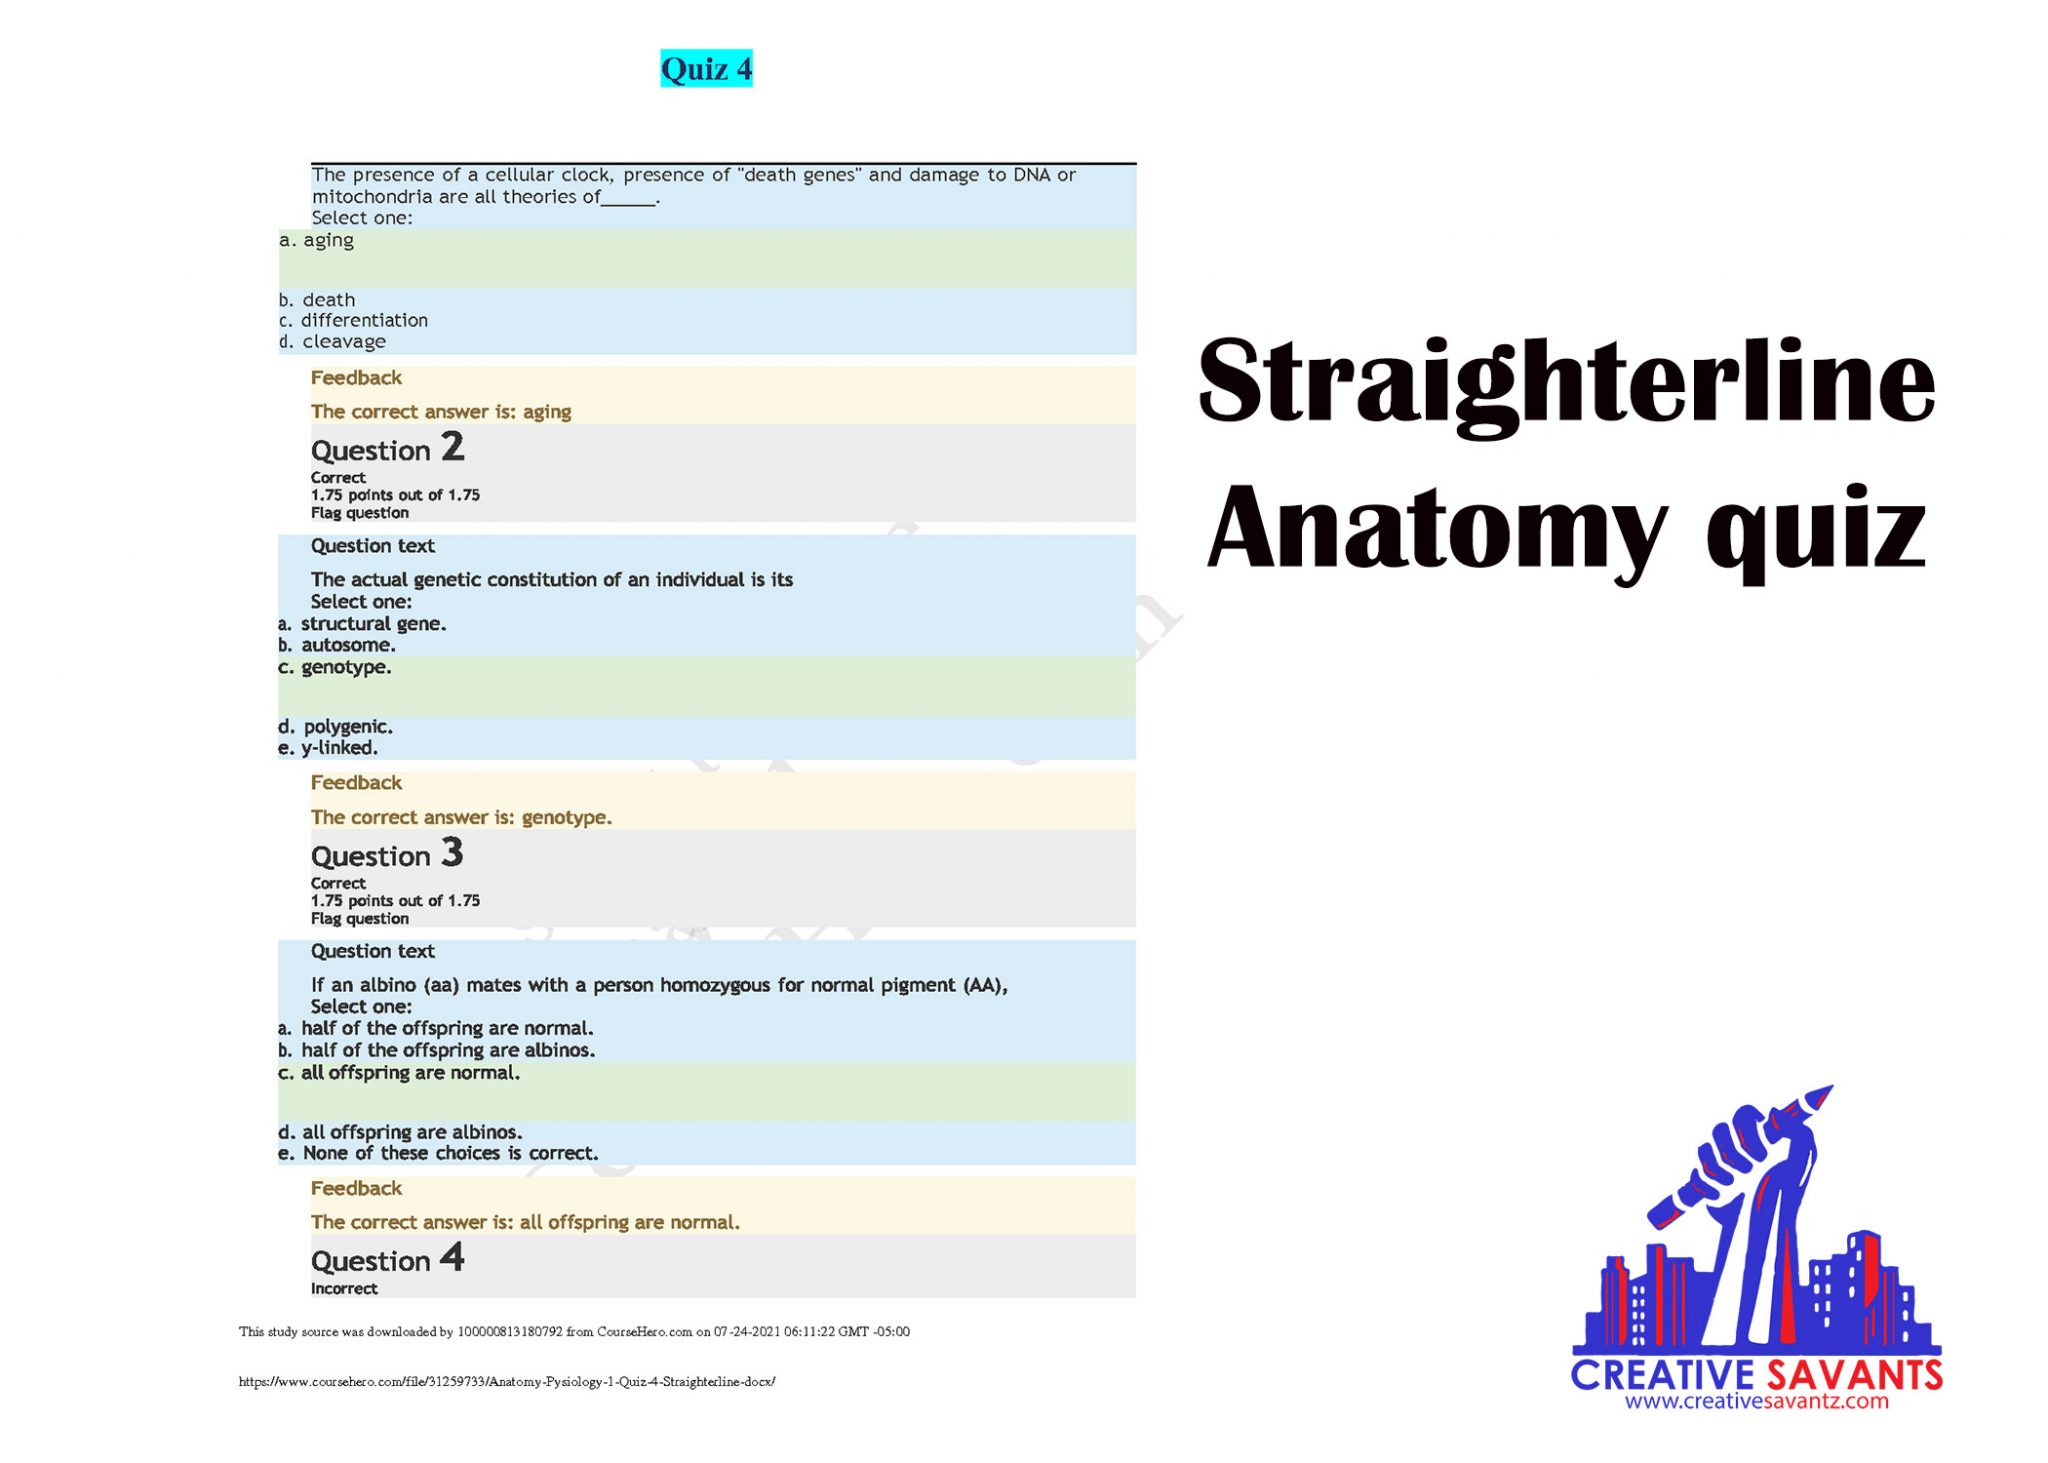 Straighterline anatomy